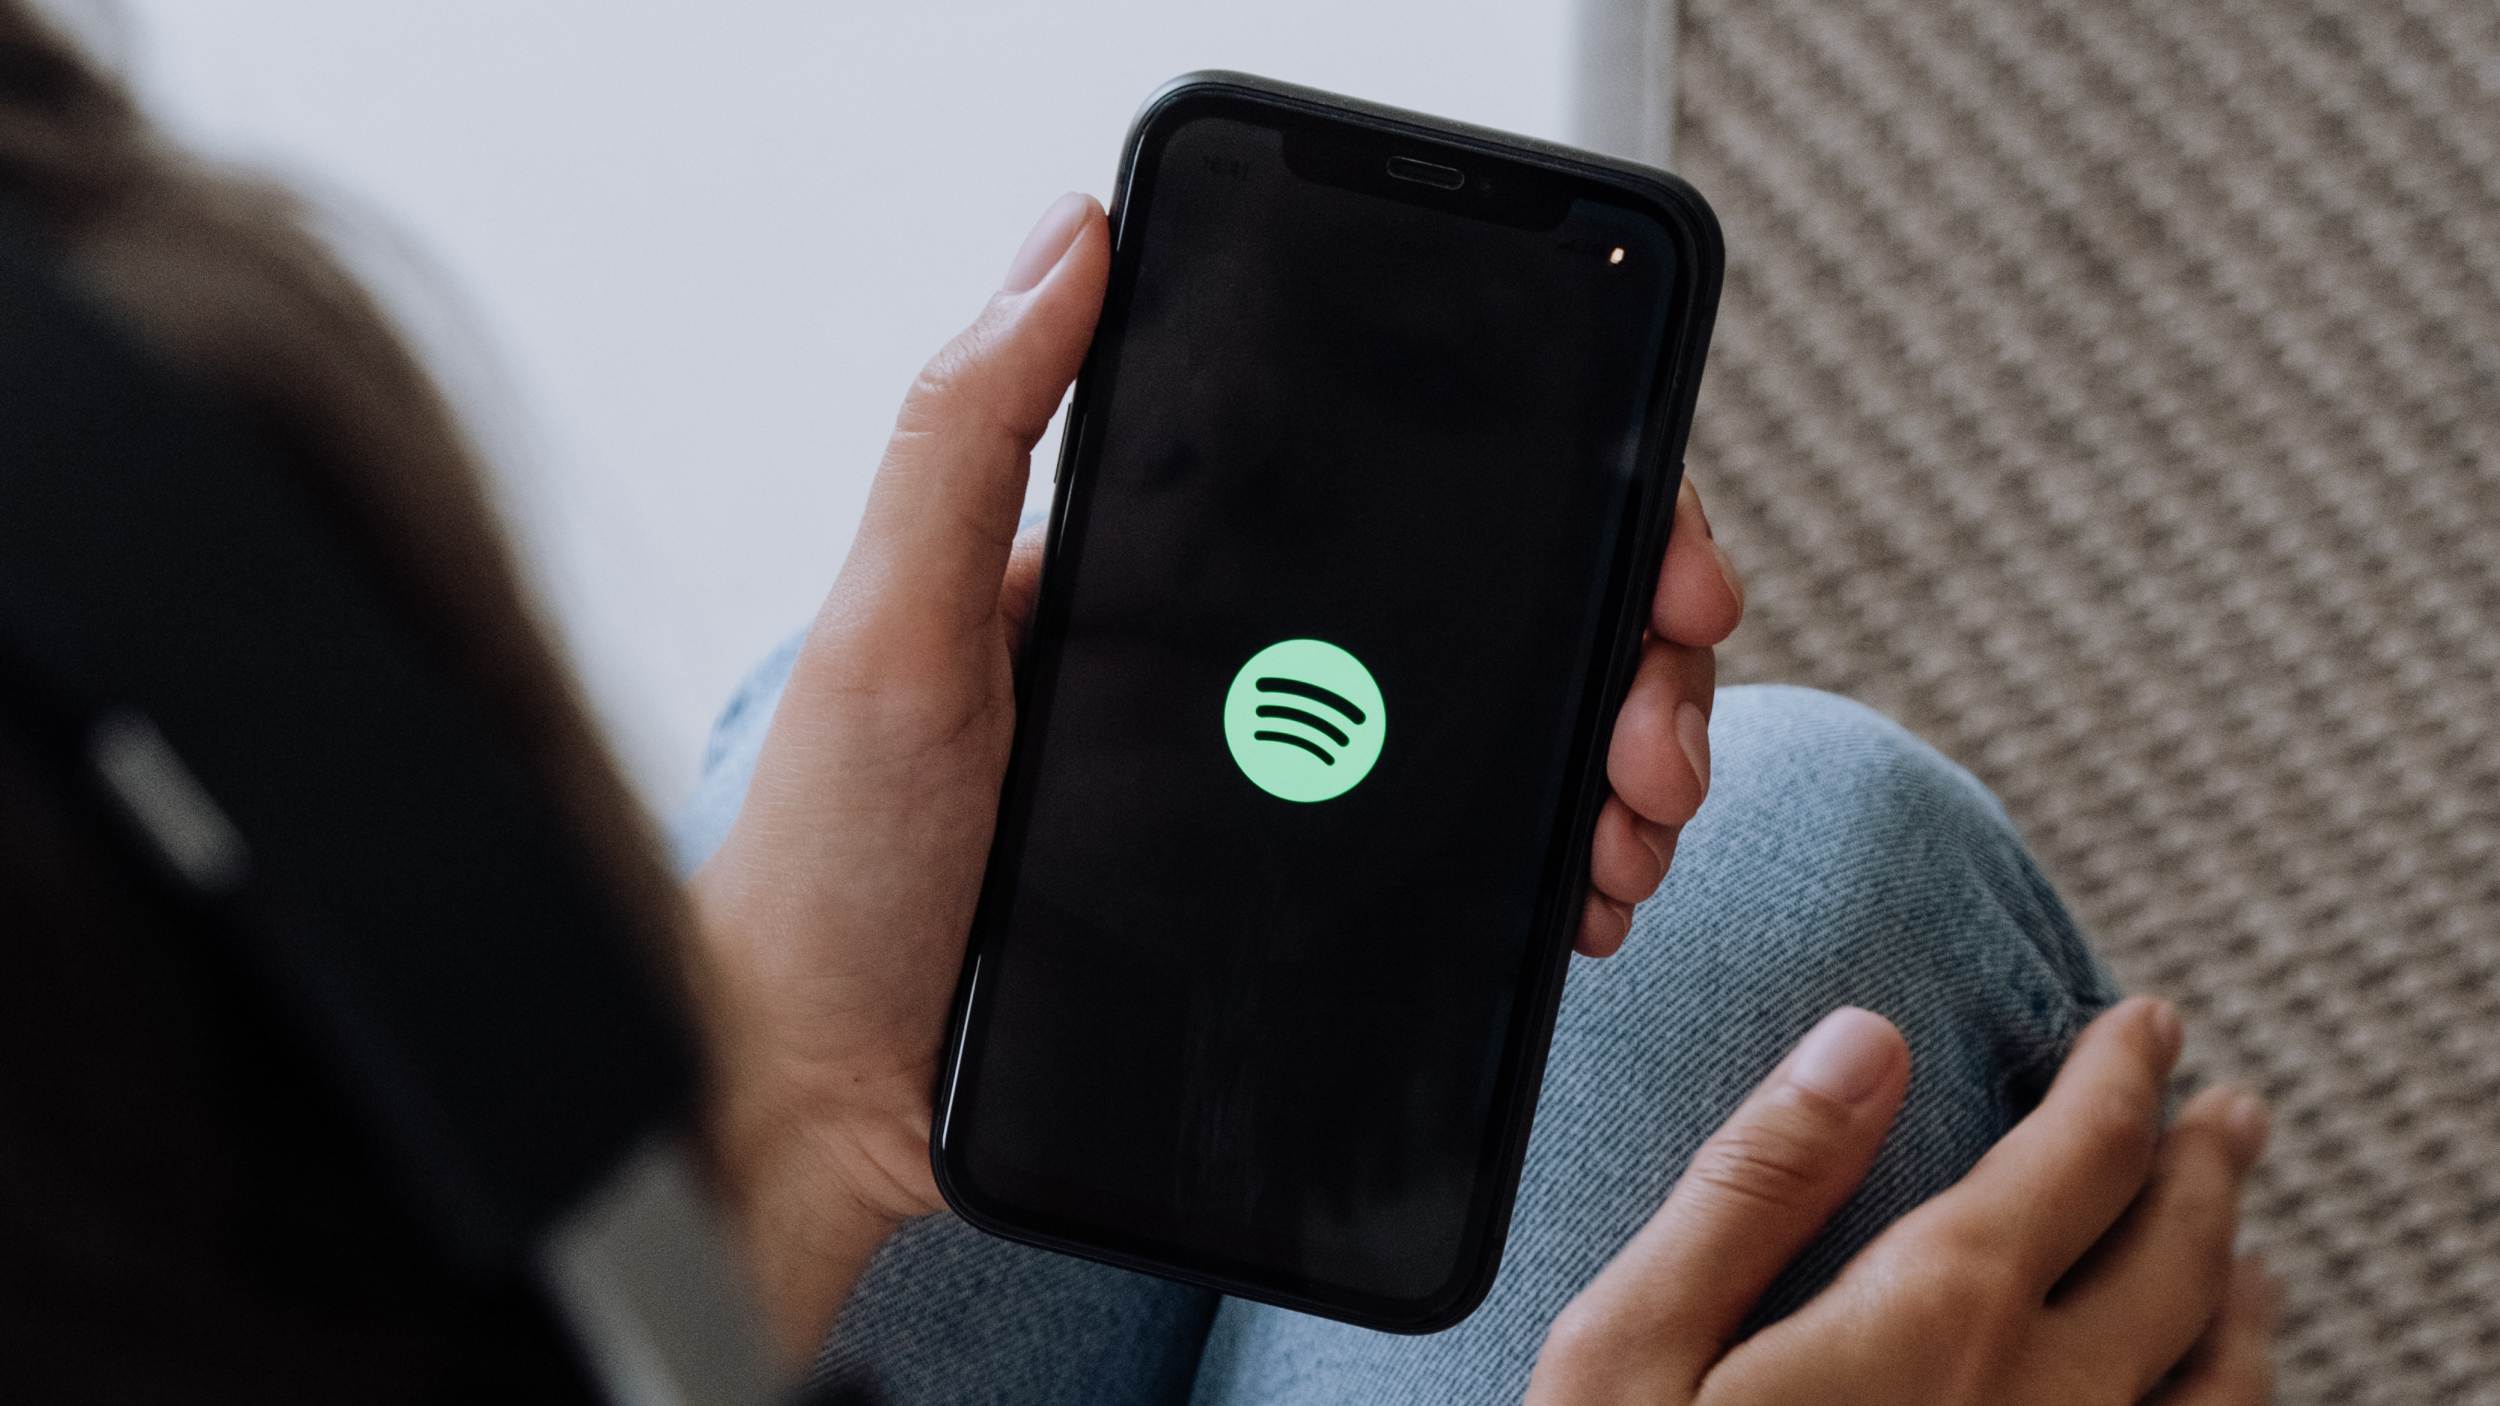 Spotify Kini Menawarkan Pelan Harian Pada Harga RM1.50, Pelan Mingguan Pada Harga RM4.90